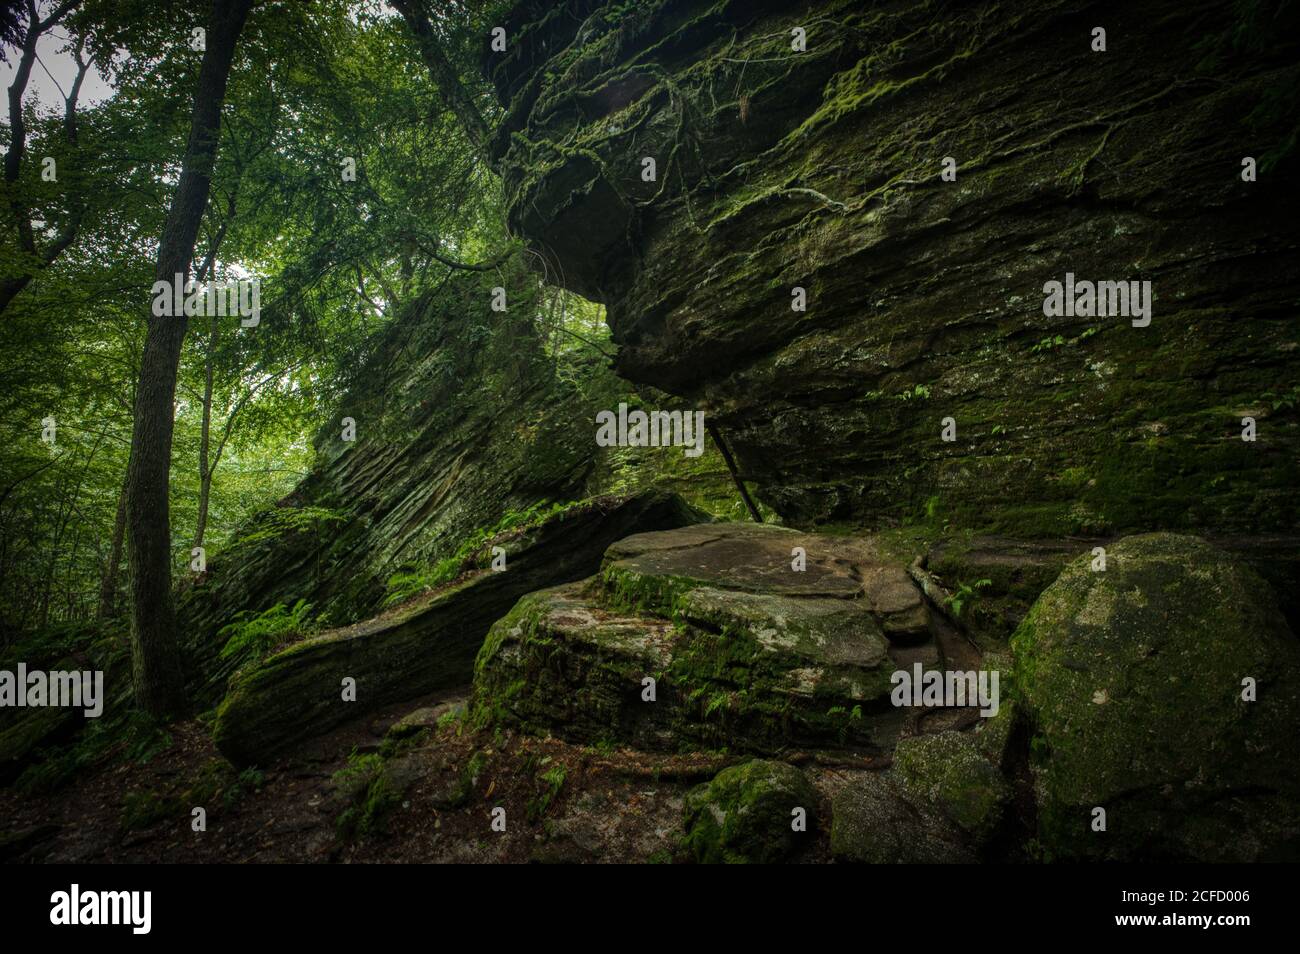 Panama Rocks Scenic Park, Chautauqua County, New York, États-Unis - une ancienne forêt pétrifiée de conglomérat de quartz Banque D'Images